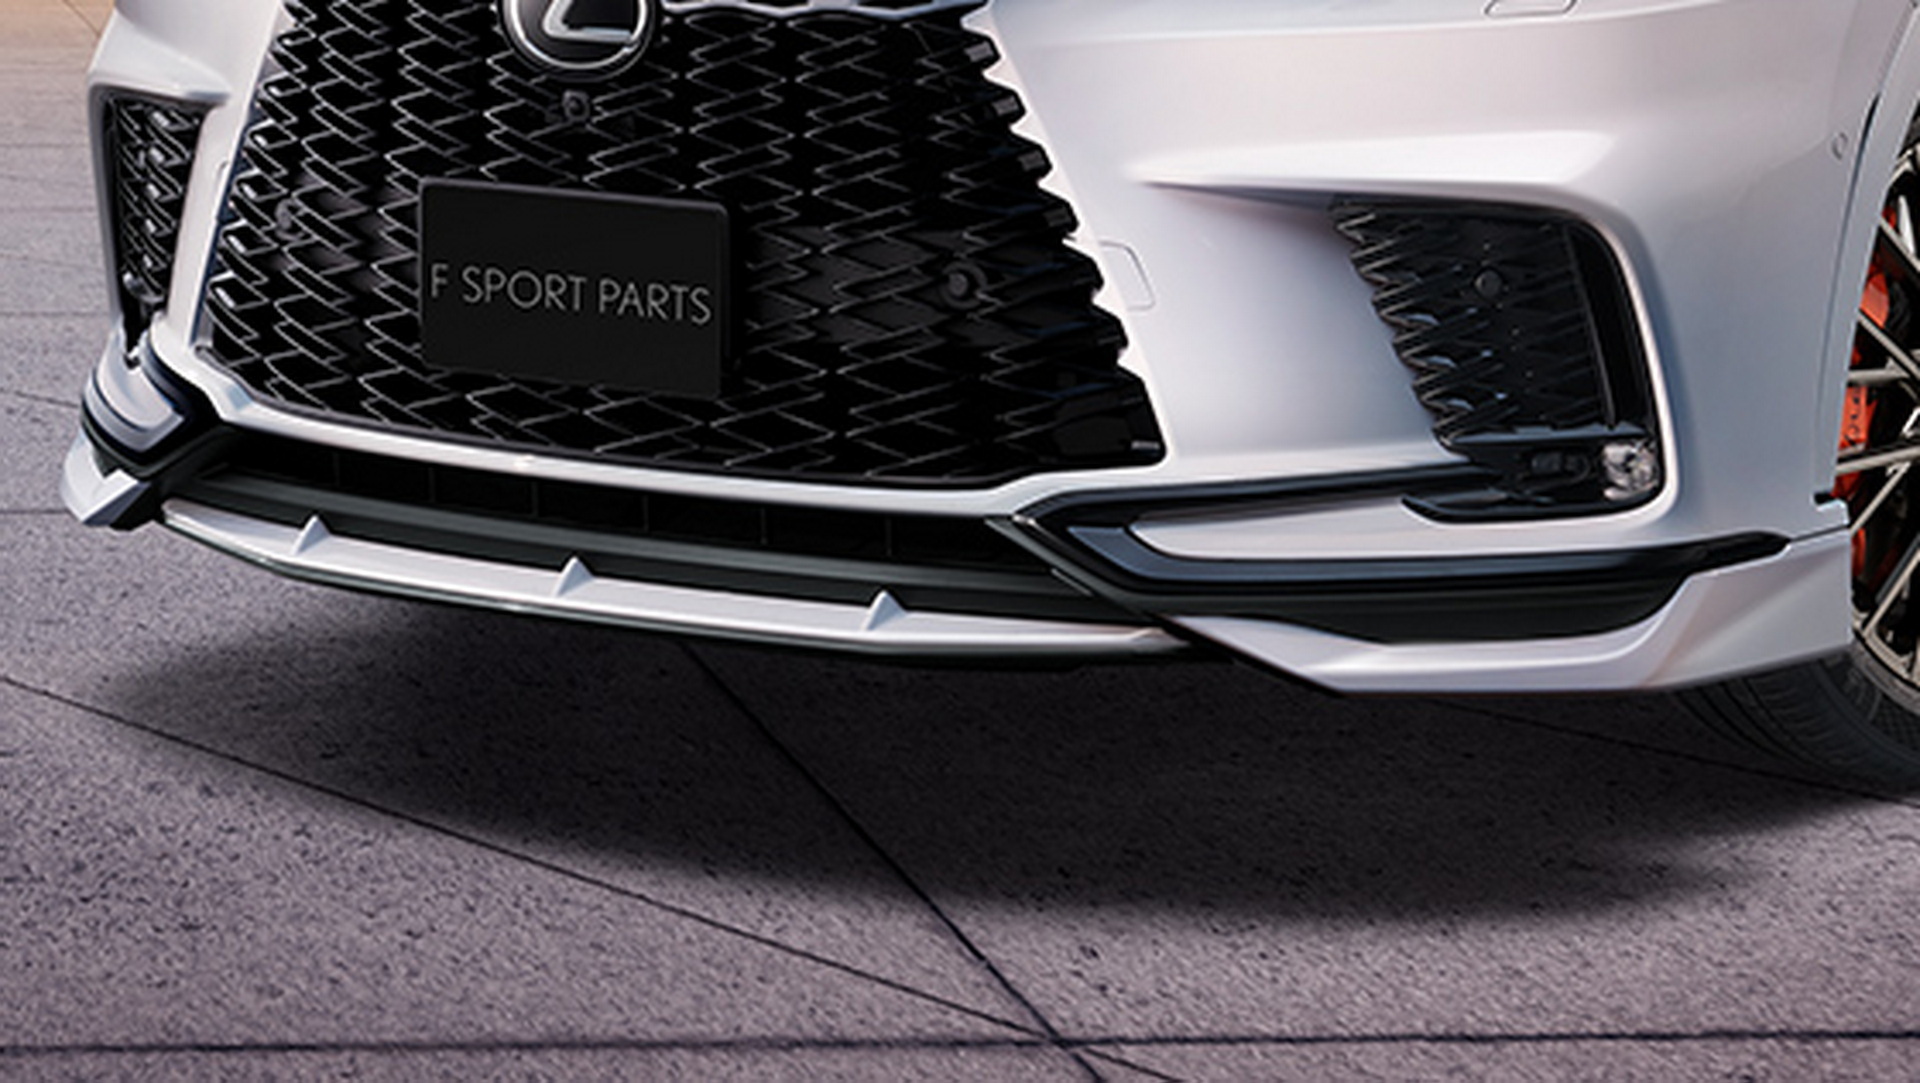 Lexus RX 2023 trông thể thao hơn với gói độ của TRD lexus-rx-with-f-sport-parts-by-trd-4.jpg